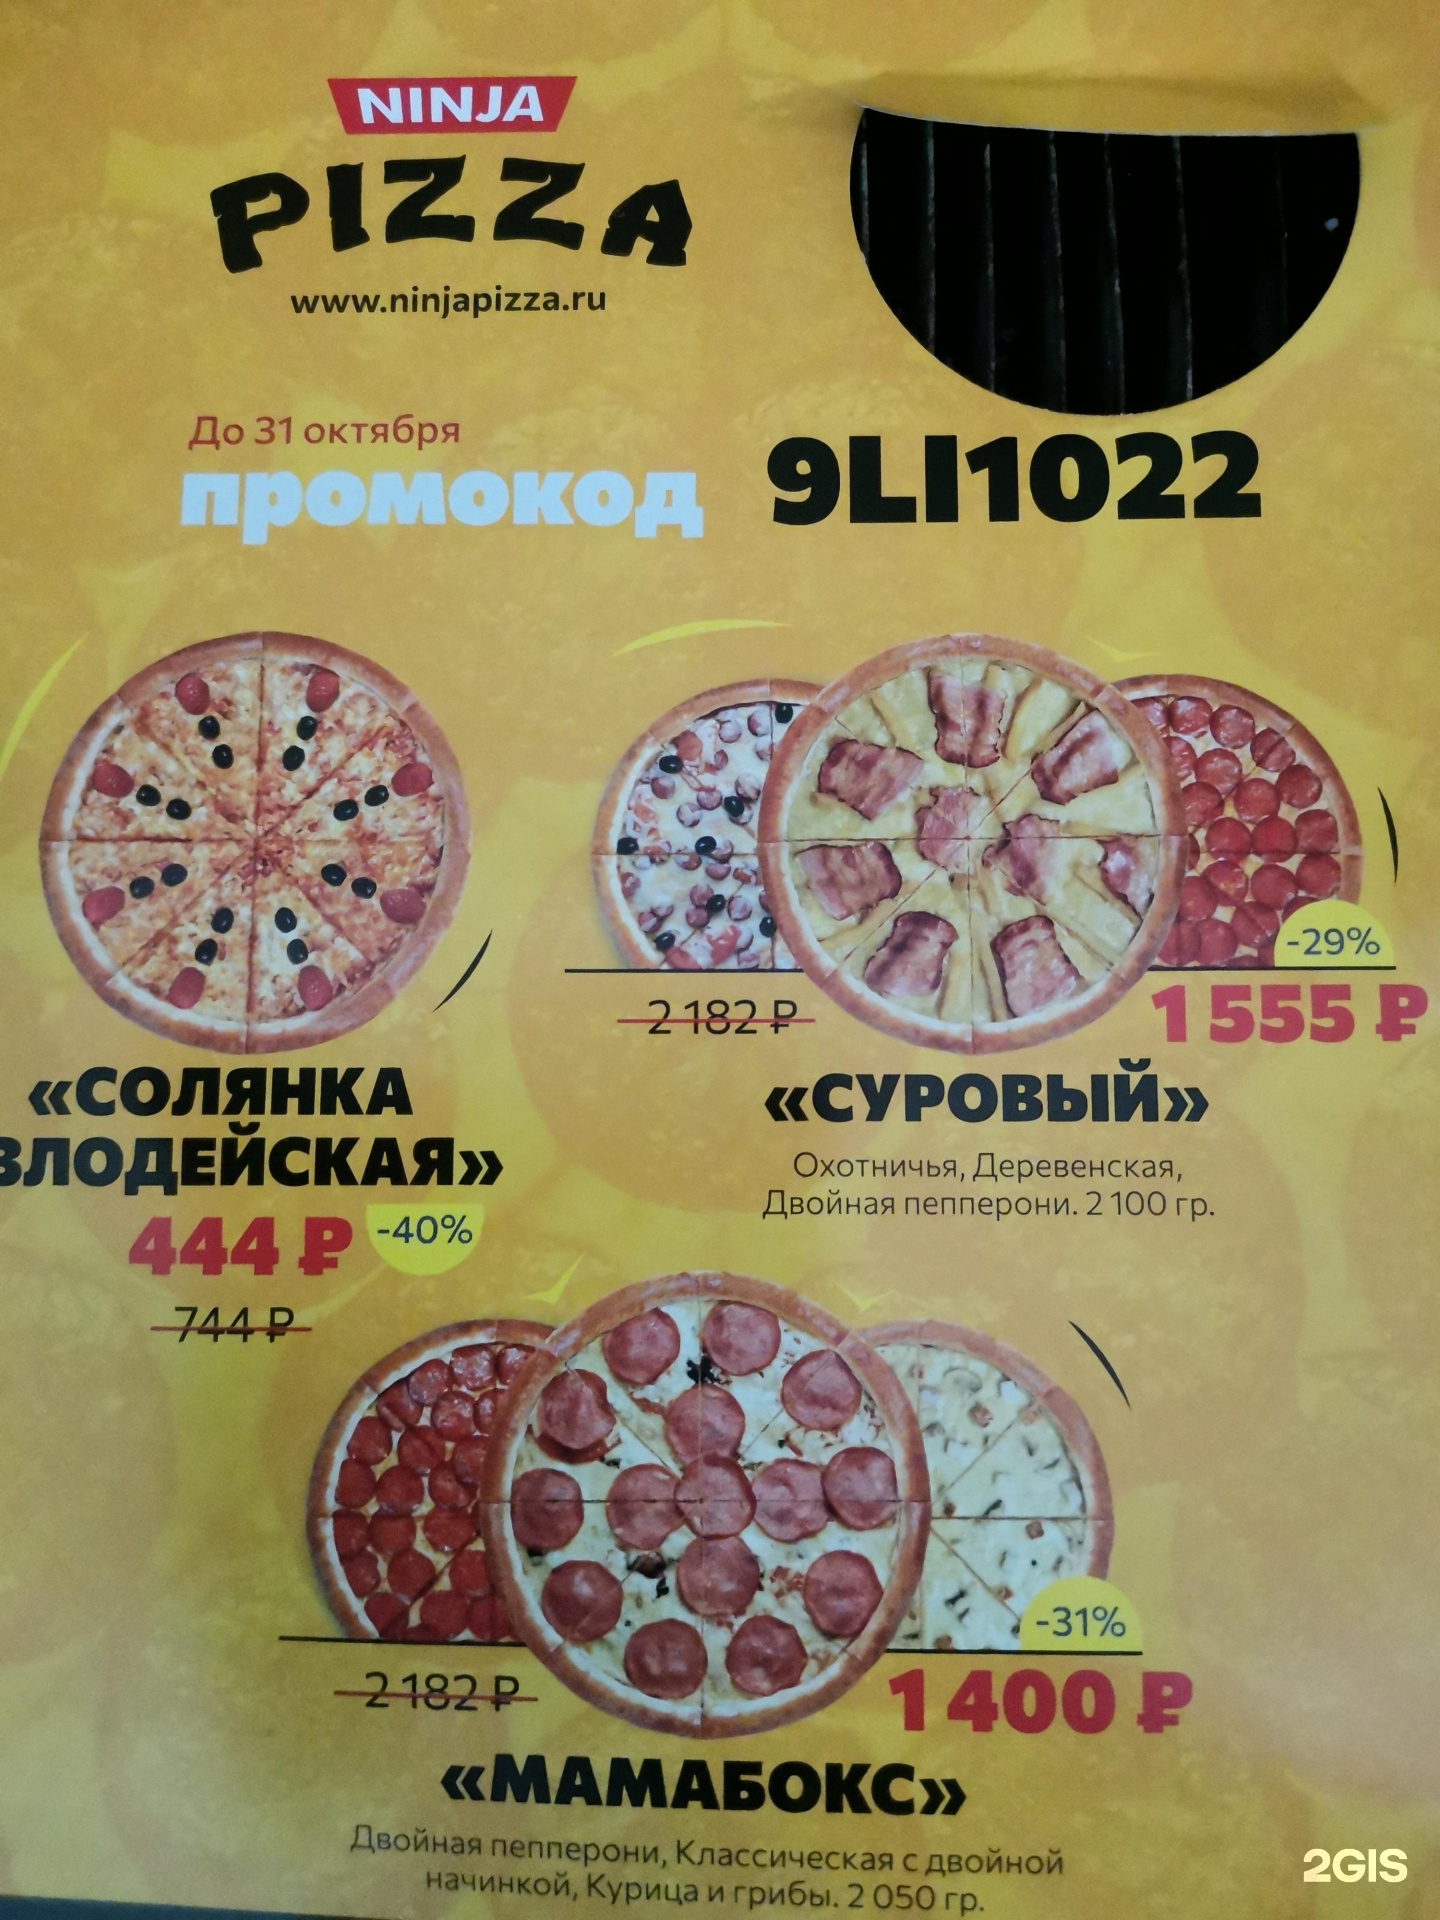 ниндзя пицца красноярск режим работы фото 93